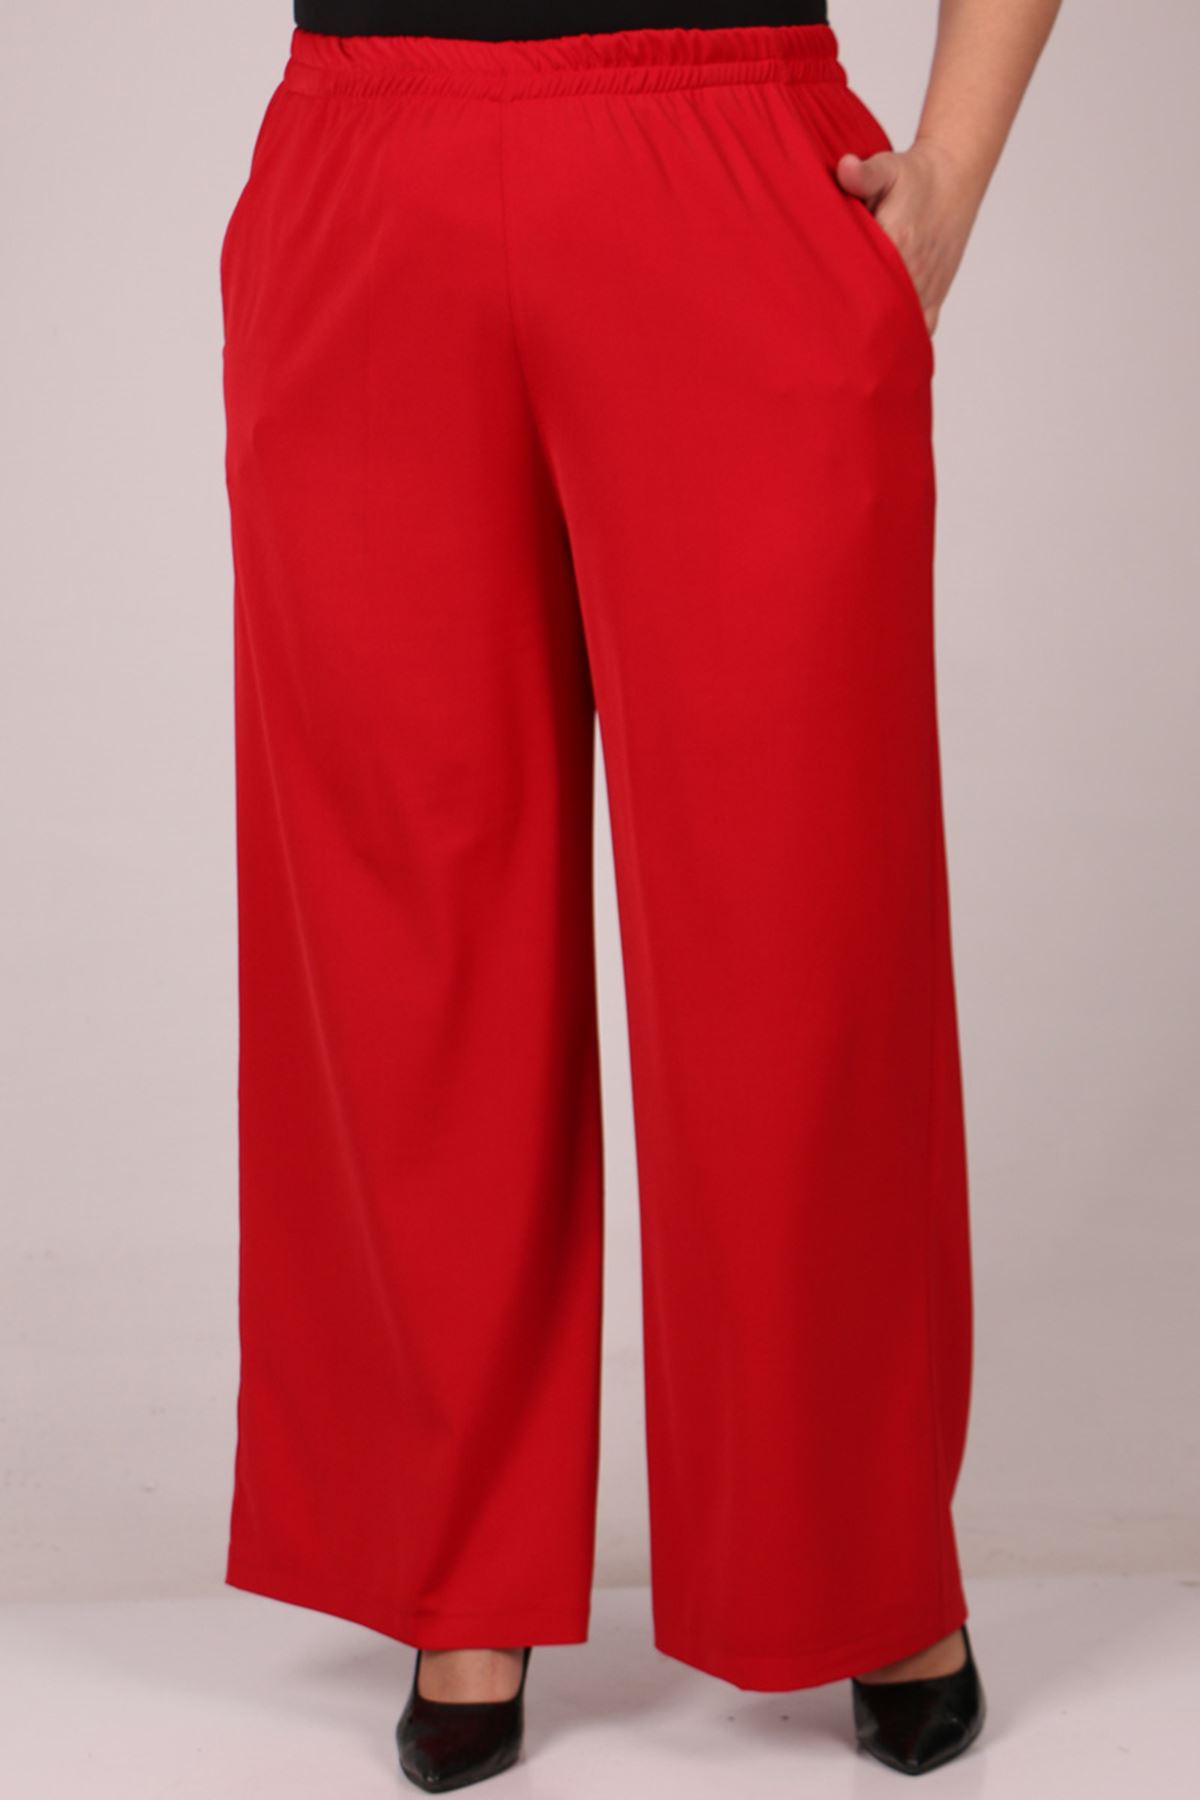 D-29019 Büyük Beden Beli Lastikli En Boy Likra Defolu Pantolon - Kırmızı